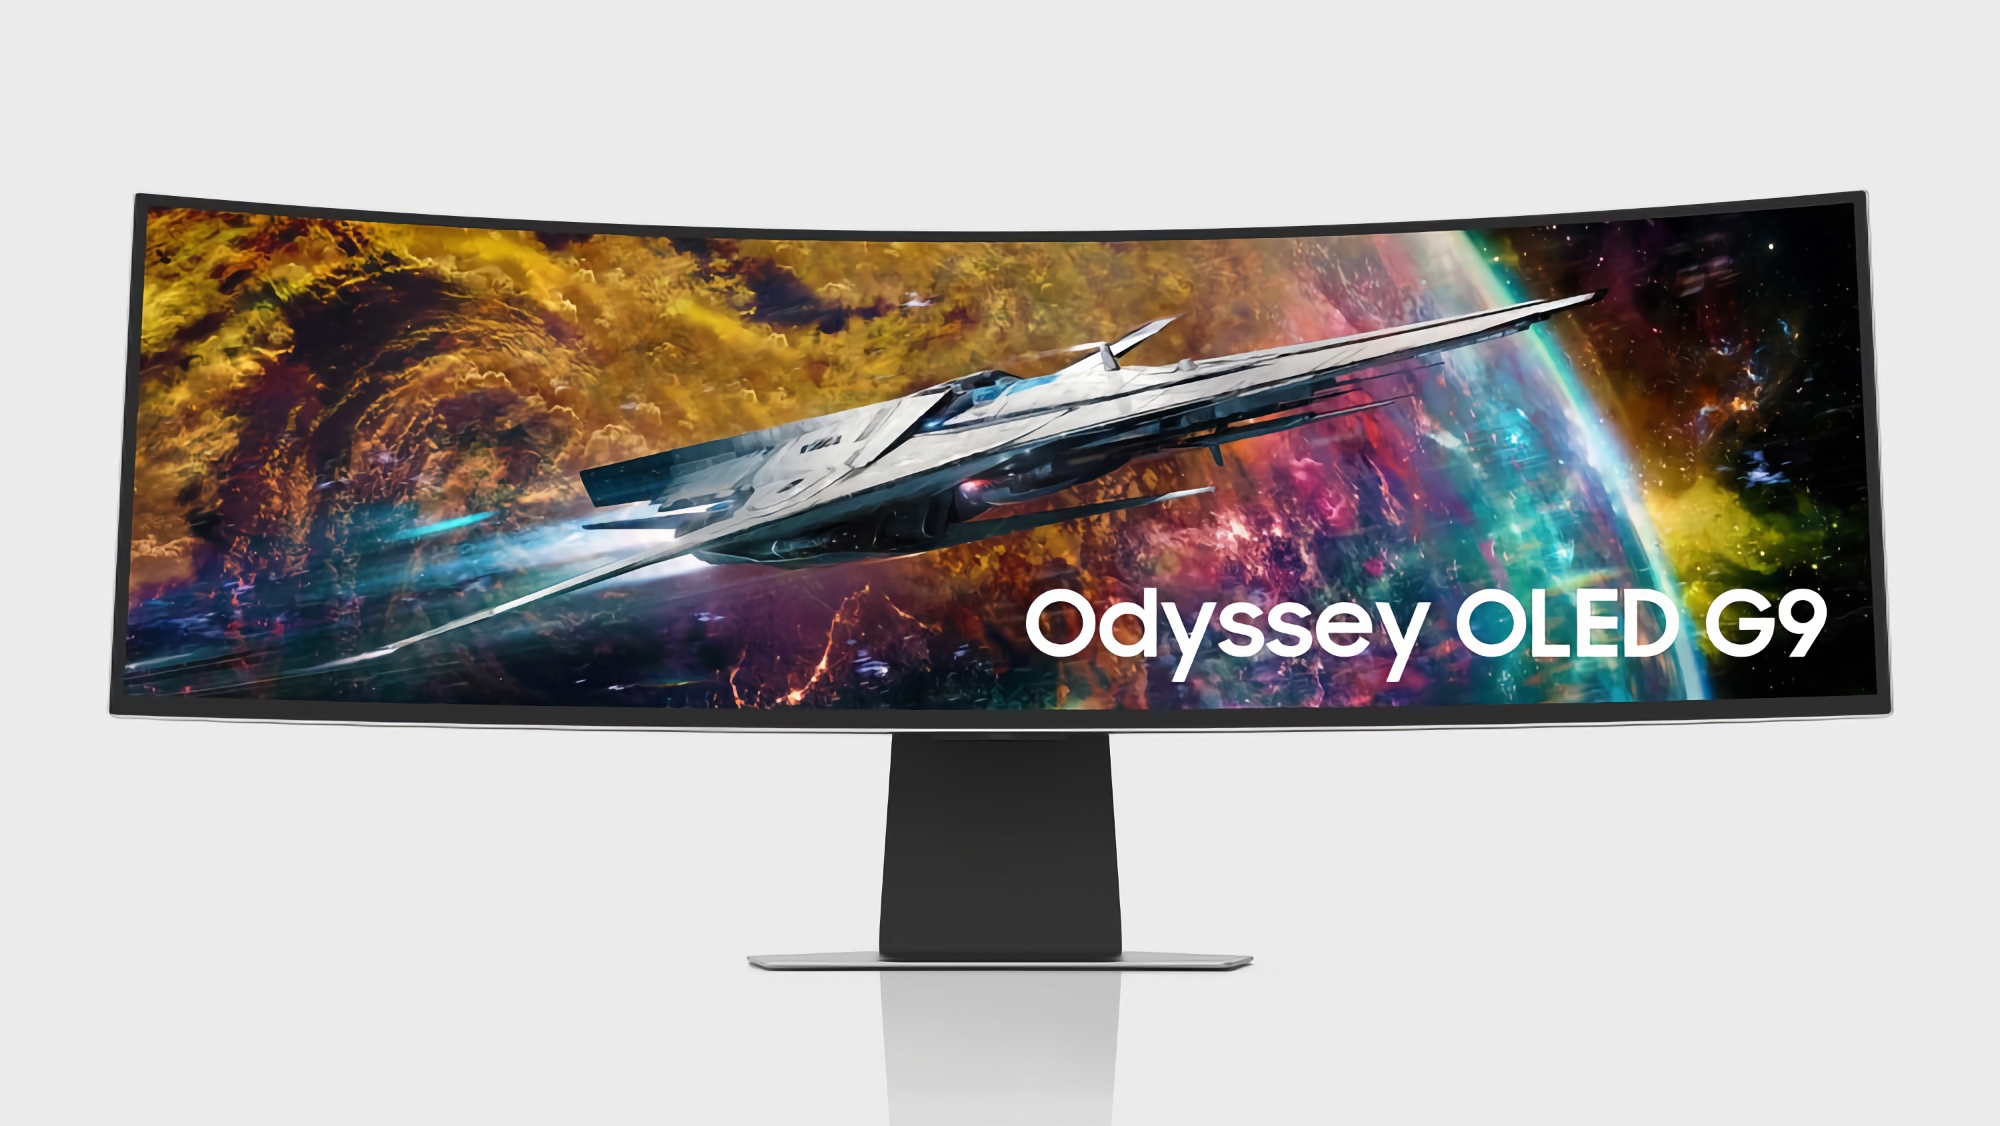 Quand et combien coûtera le Samsung Odyssey OLED G9 avec écran 240Hz ?